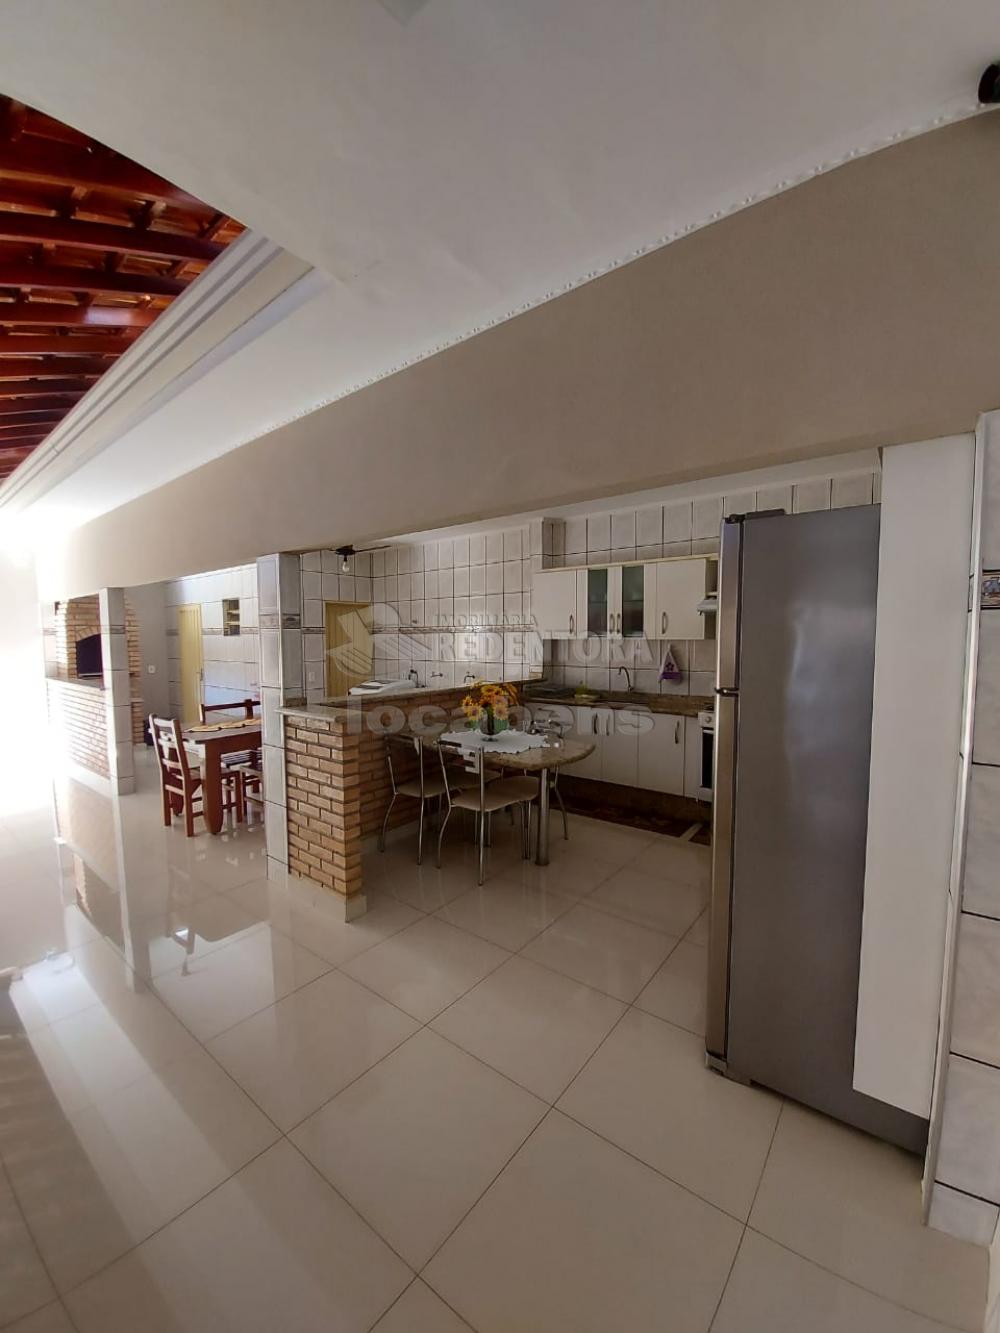 Comprar Casa / Padrão em São José do Rio Preto apenas R$ 470.000,00 - Foto 6